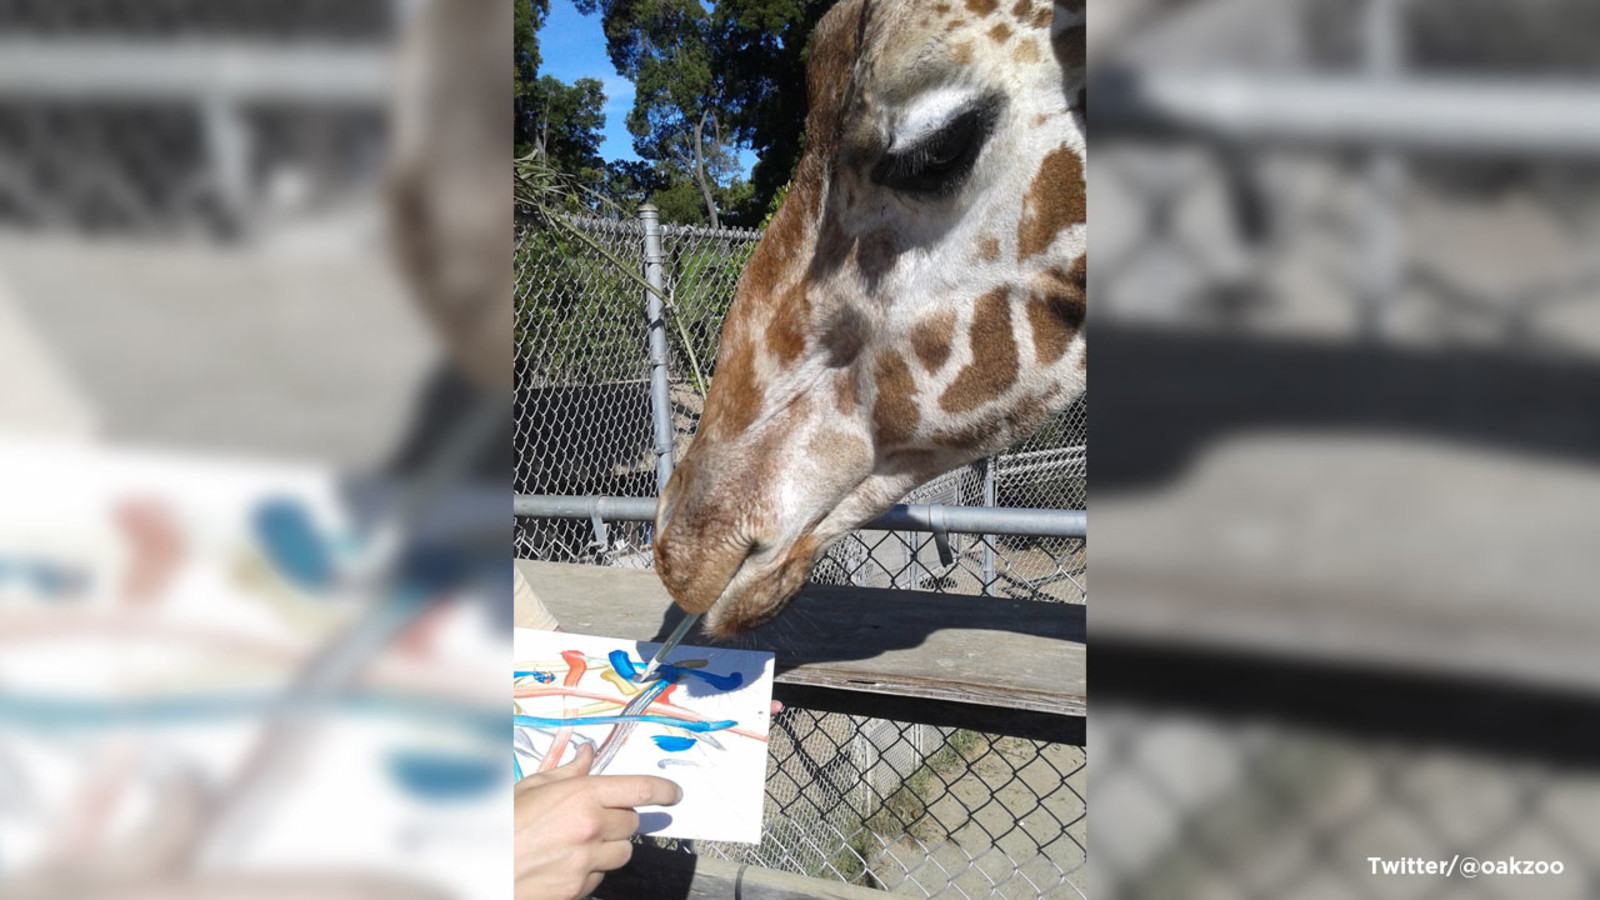 Oakland Zoo Birthday Party
 Benghazi Oakland Zoo s painting giraffe celebrates